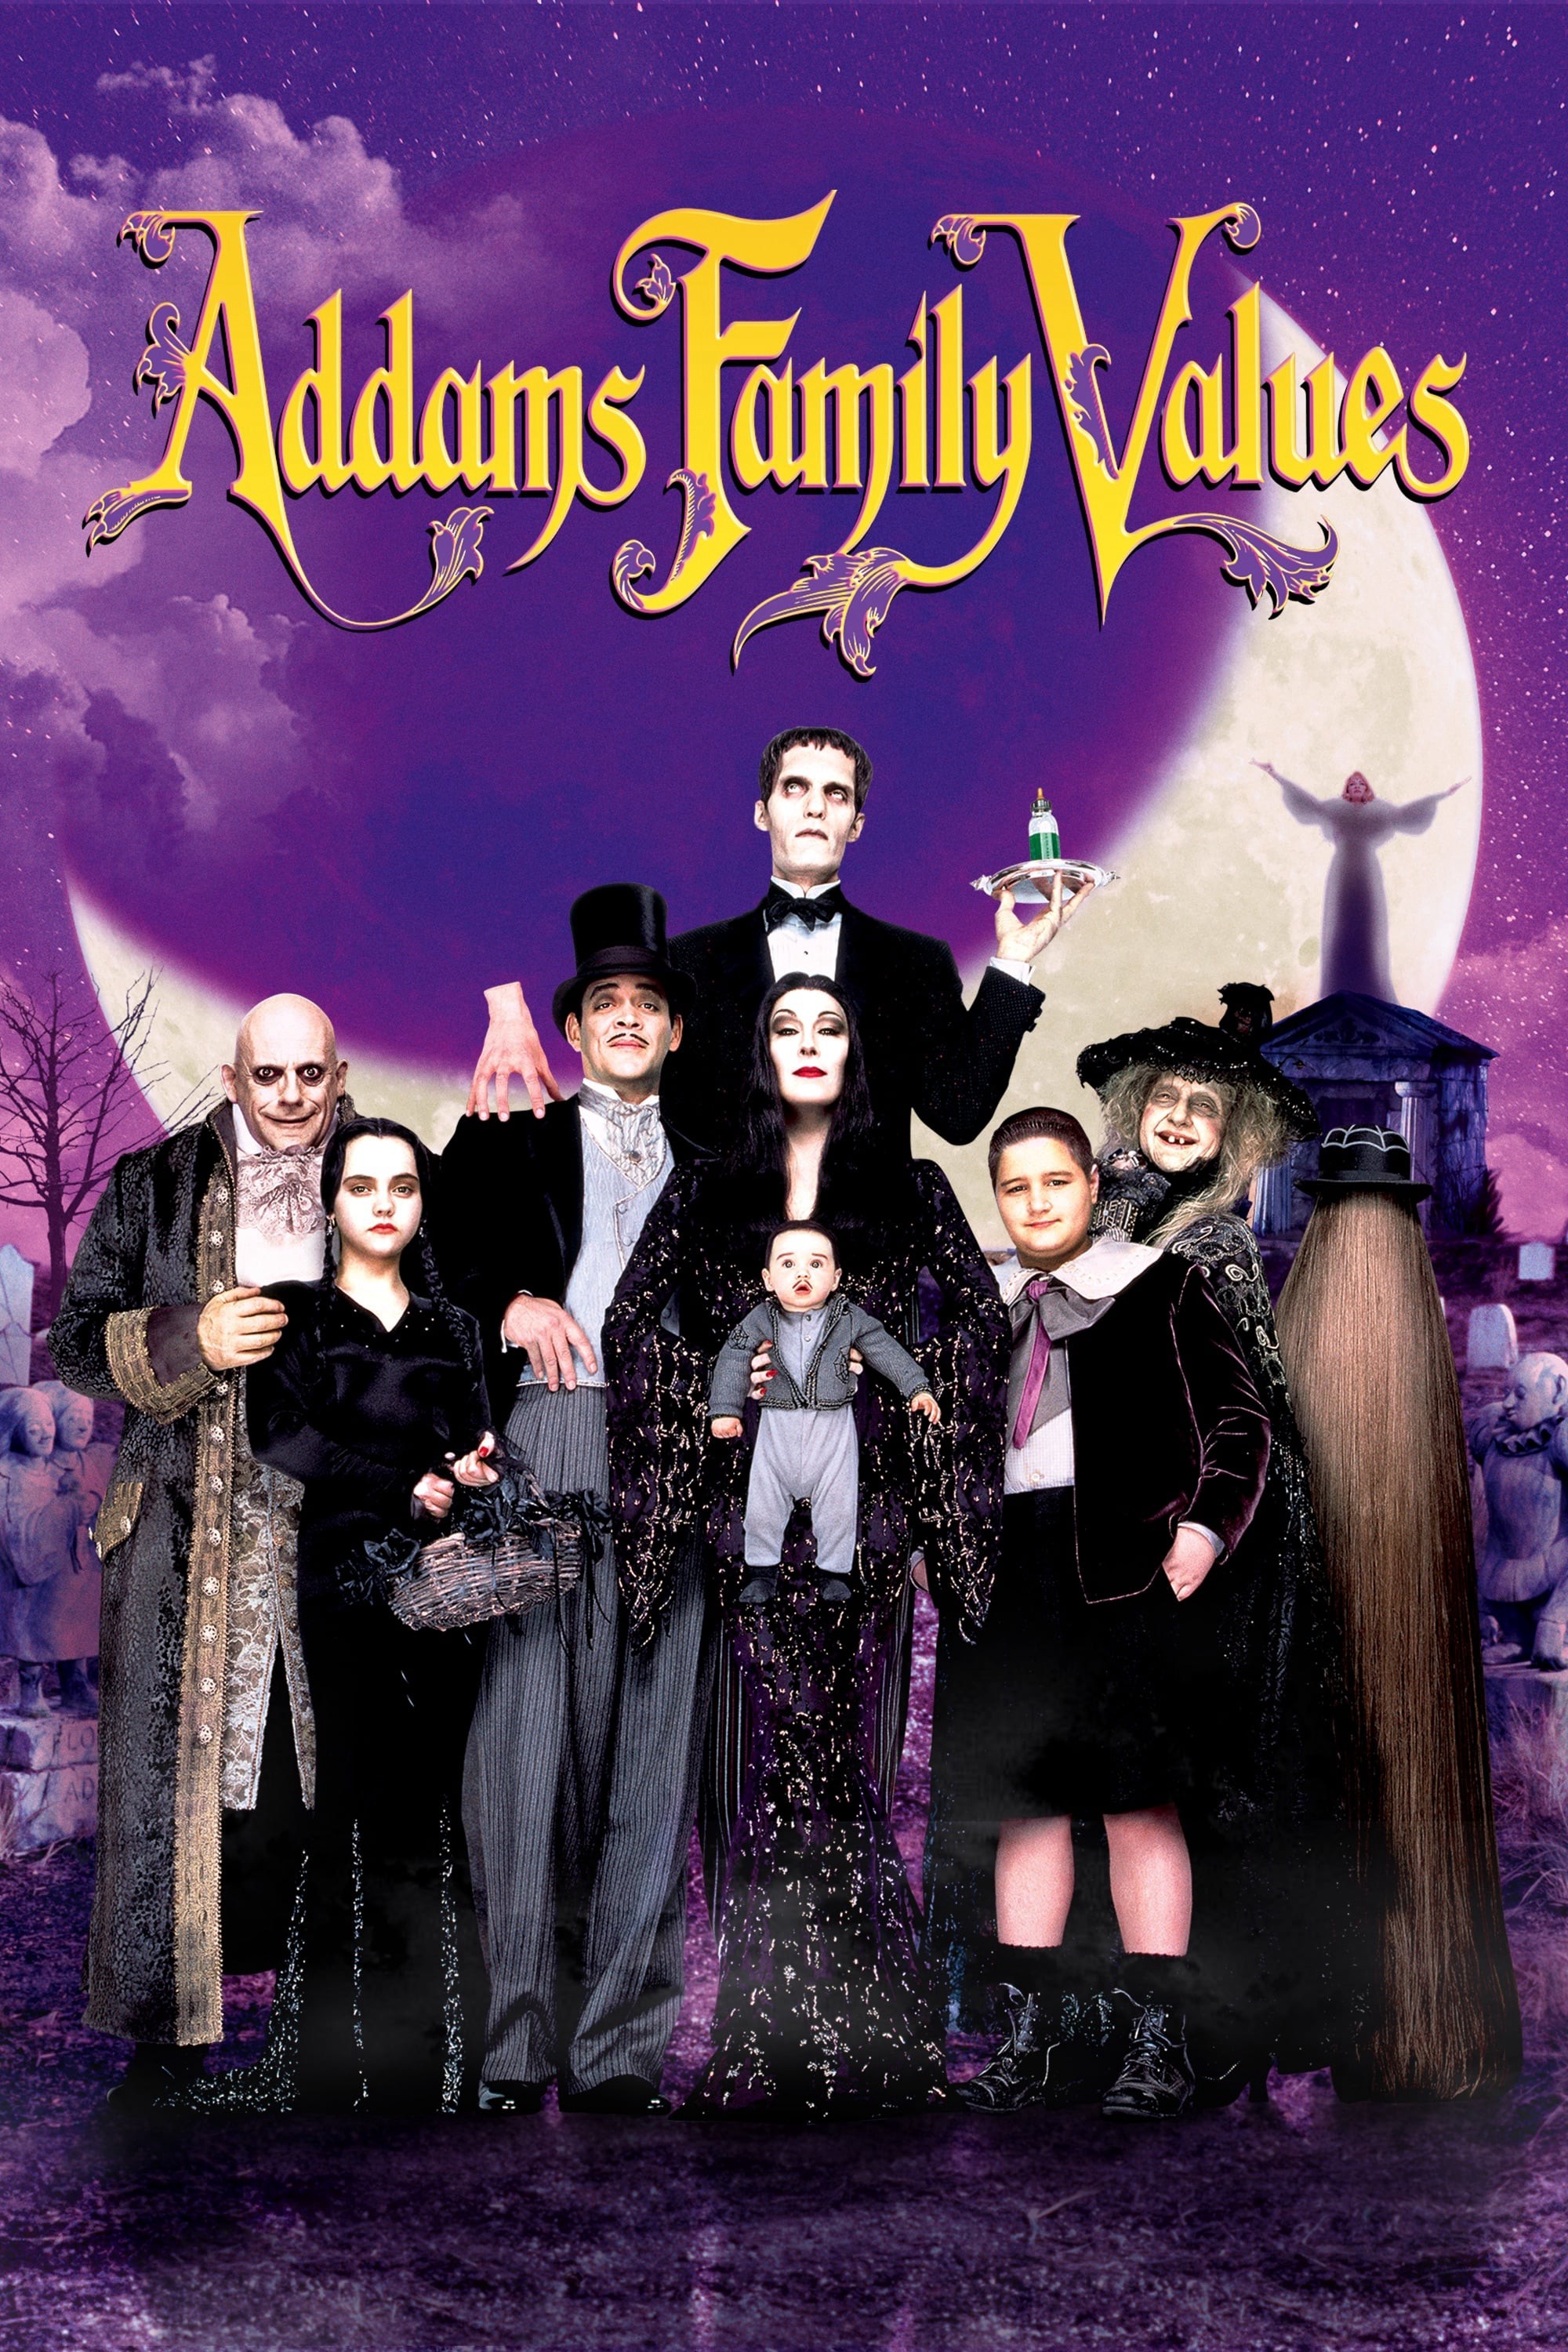 Gia đình Addams 2 1993